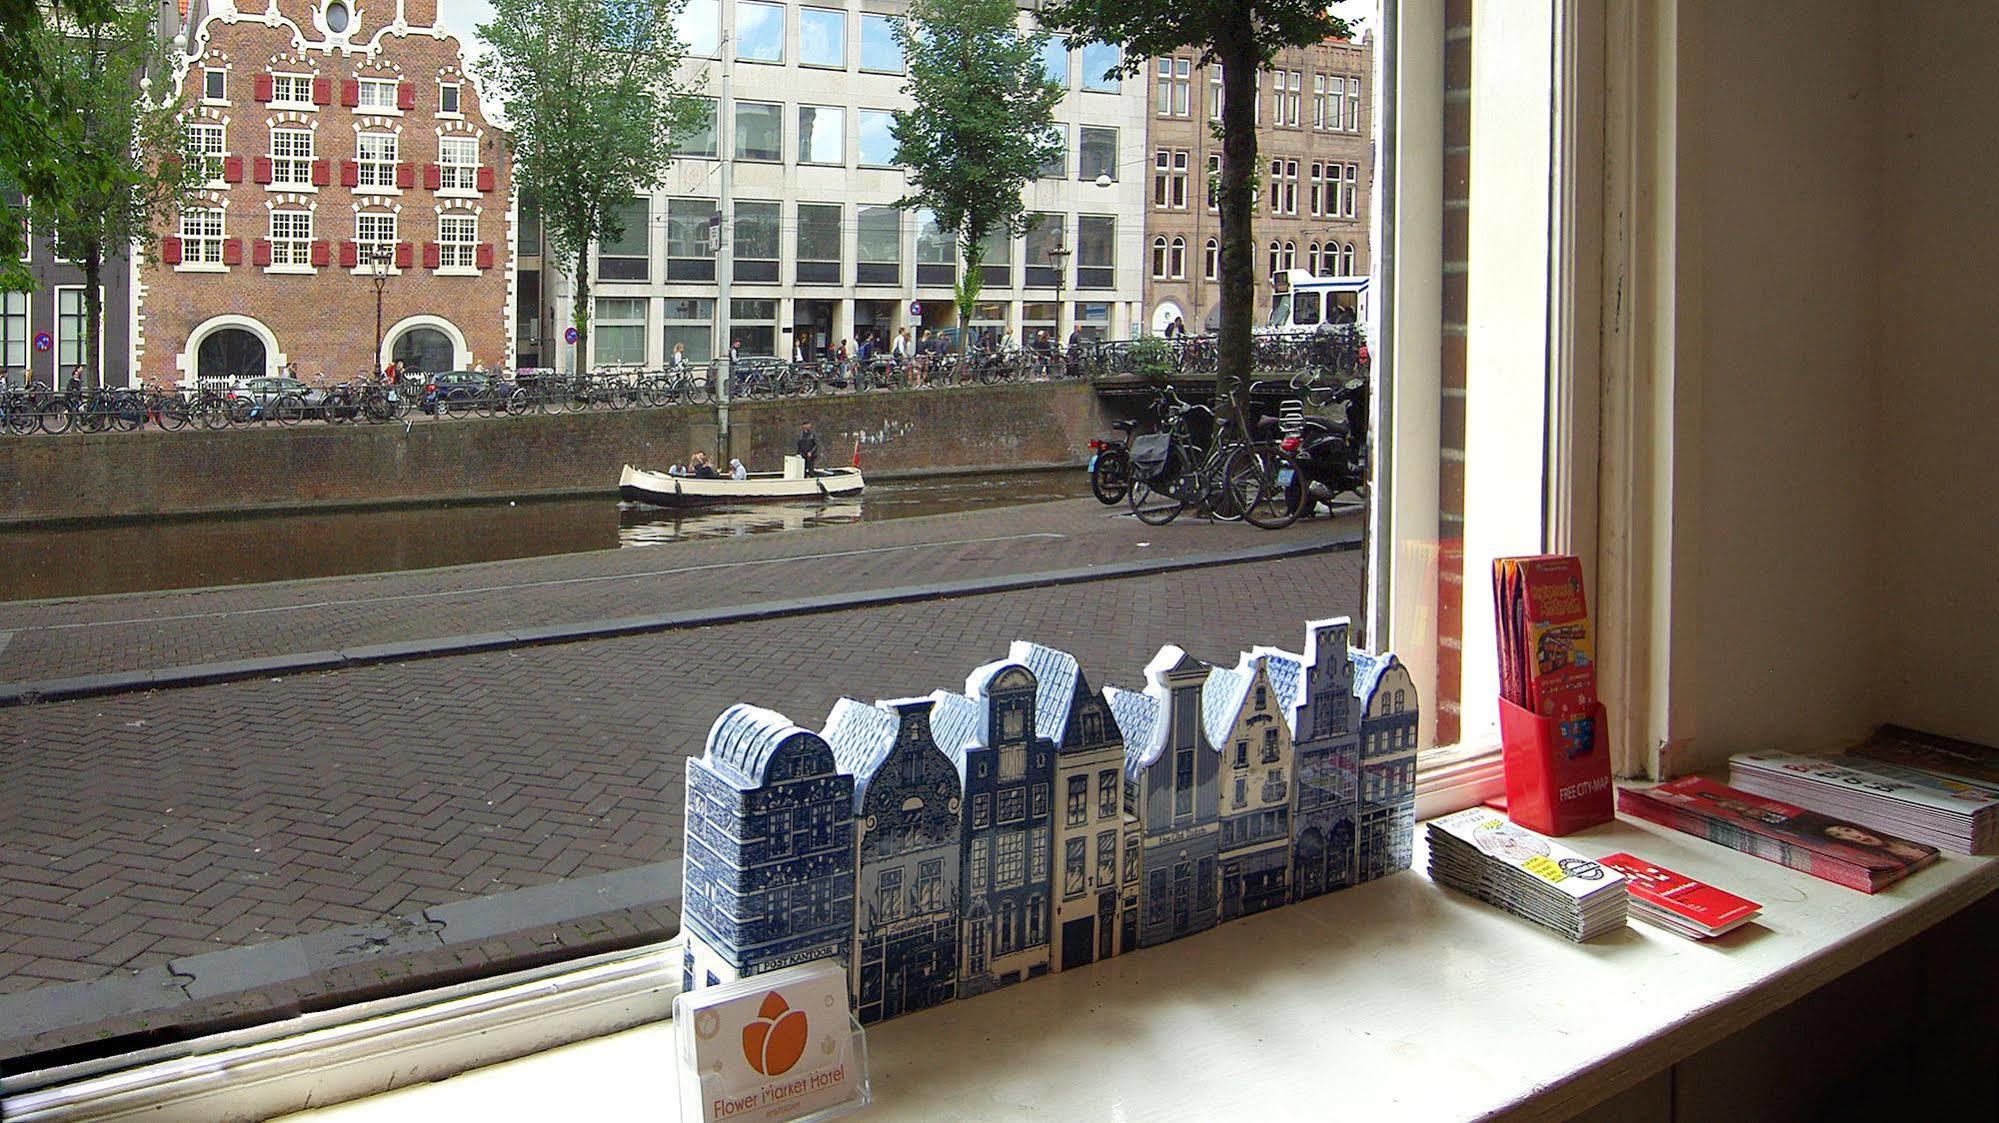 Flower Market Hotel Amsterdam Exterior photo